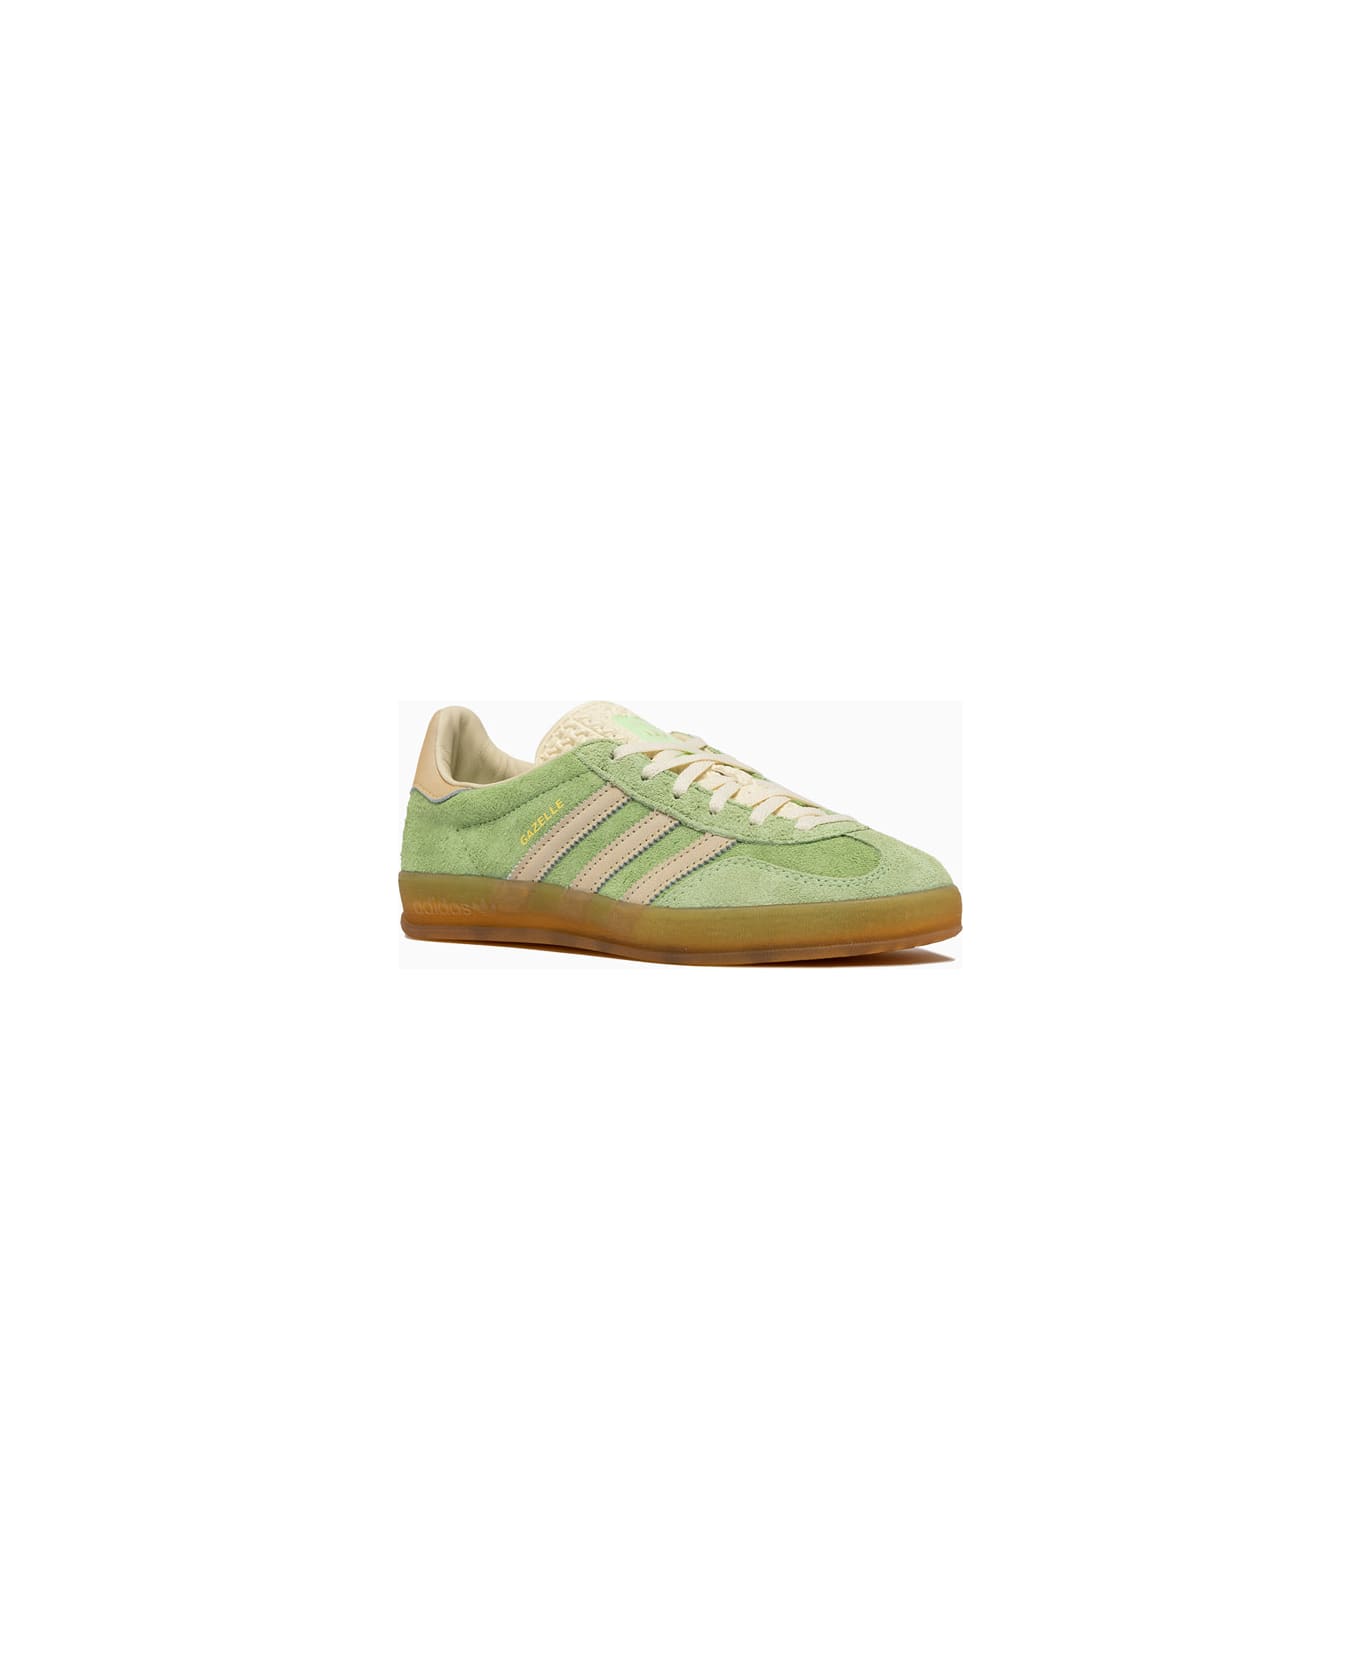 Adidas Originals Gazelle Indoor W Sneakers Ie2948 - Green